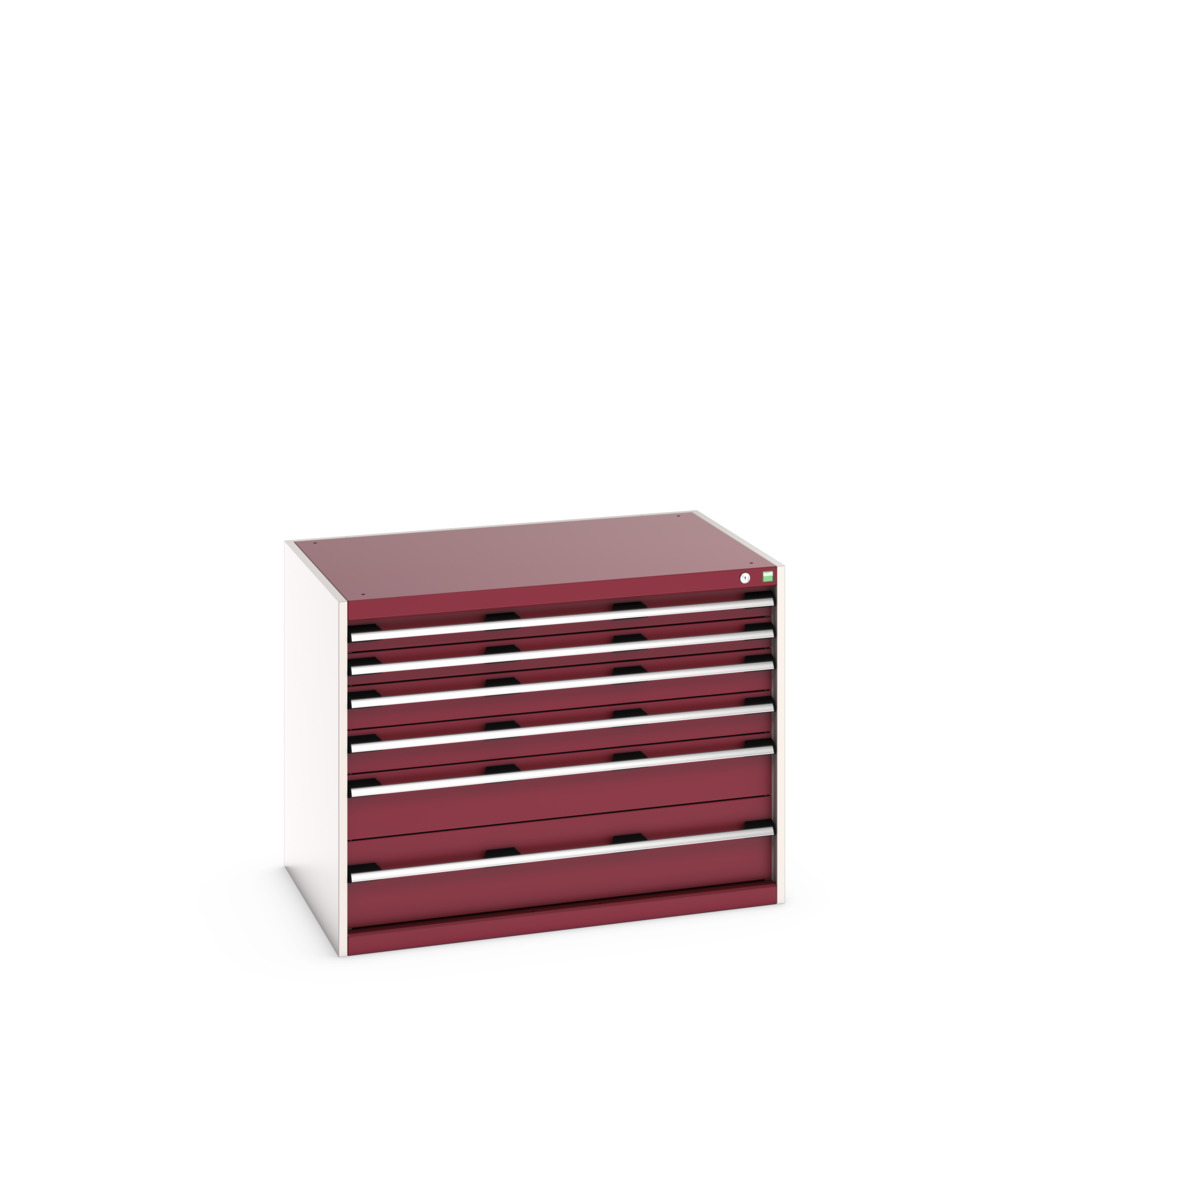 40029086.24V - cubio drawer cabinet